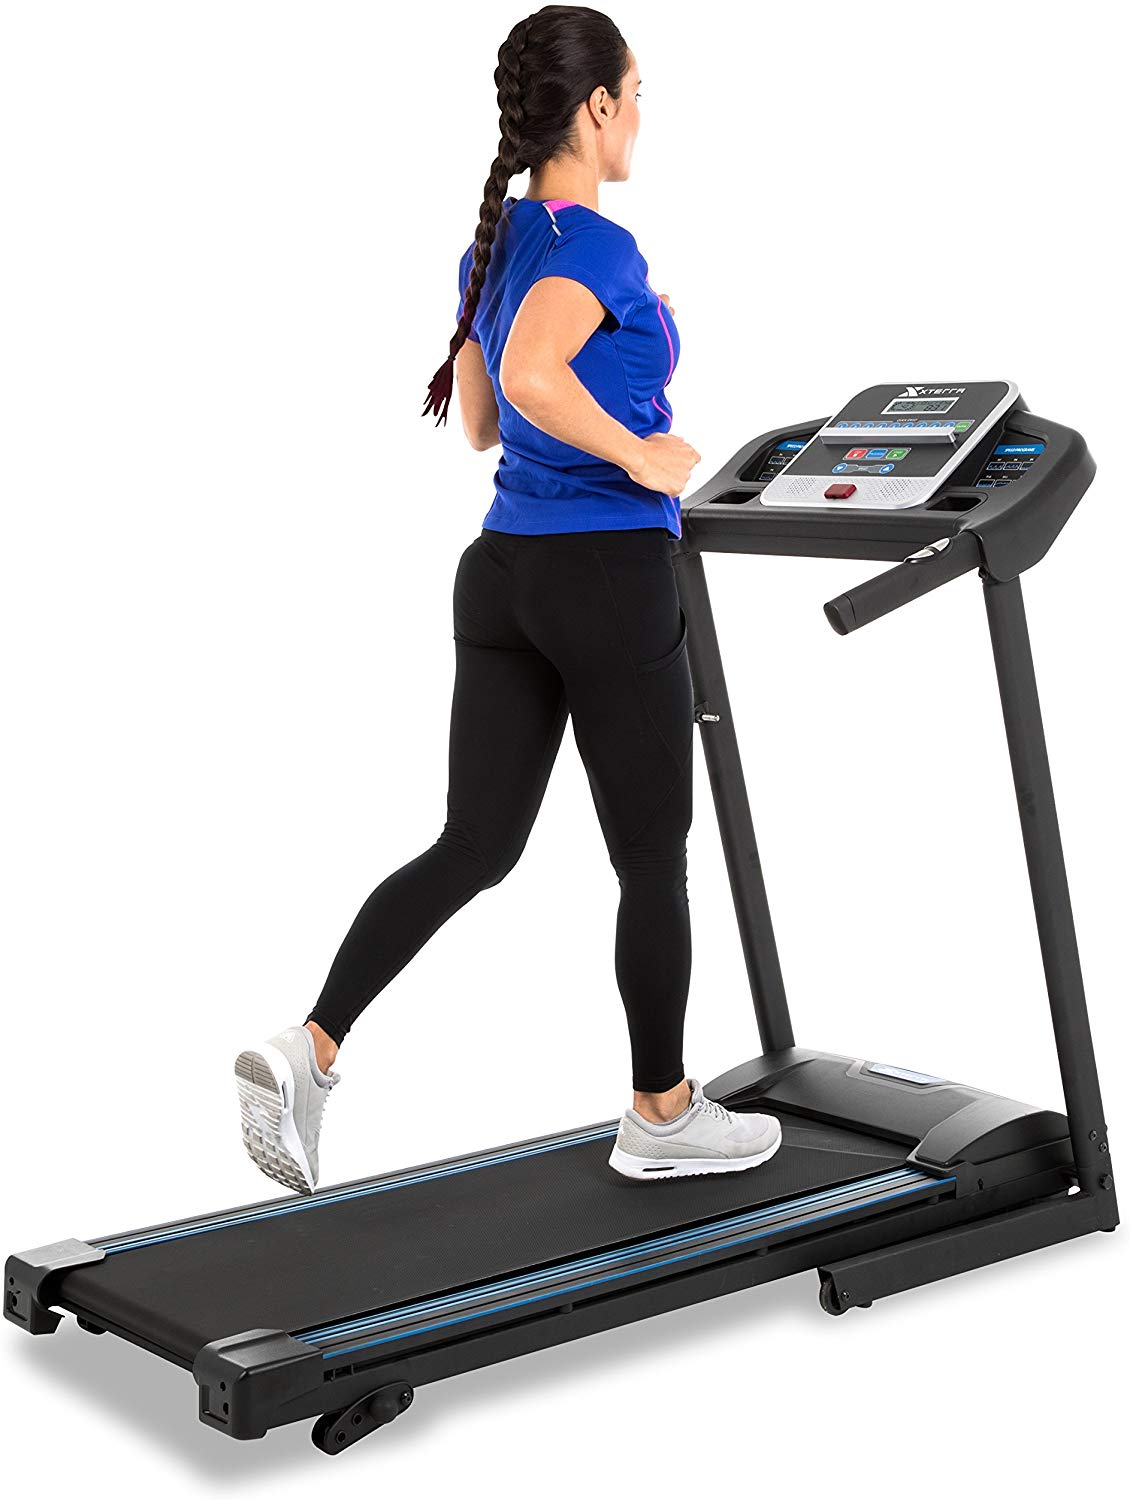 Xterra Fitness TR150 - Best Treadmill Under $500